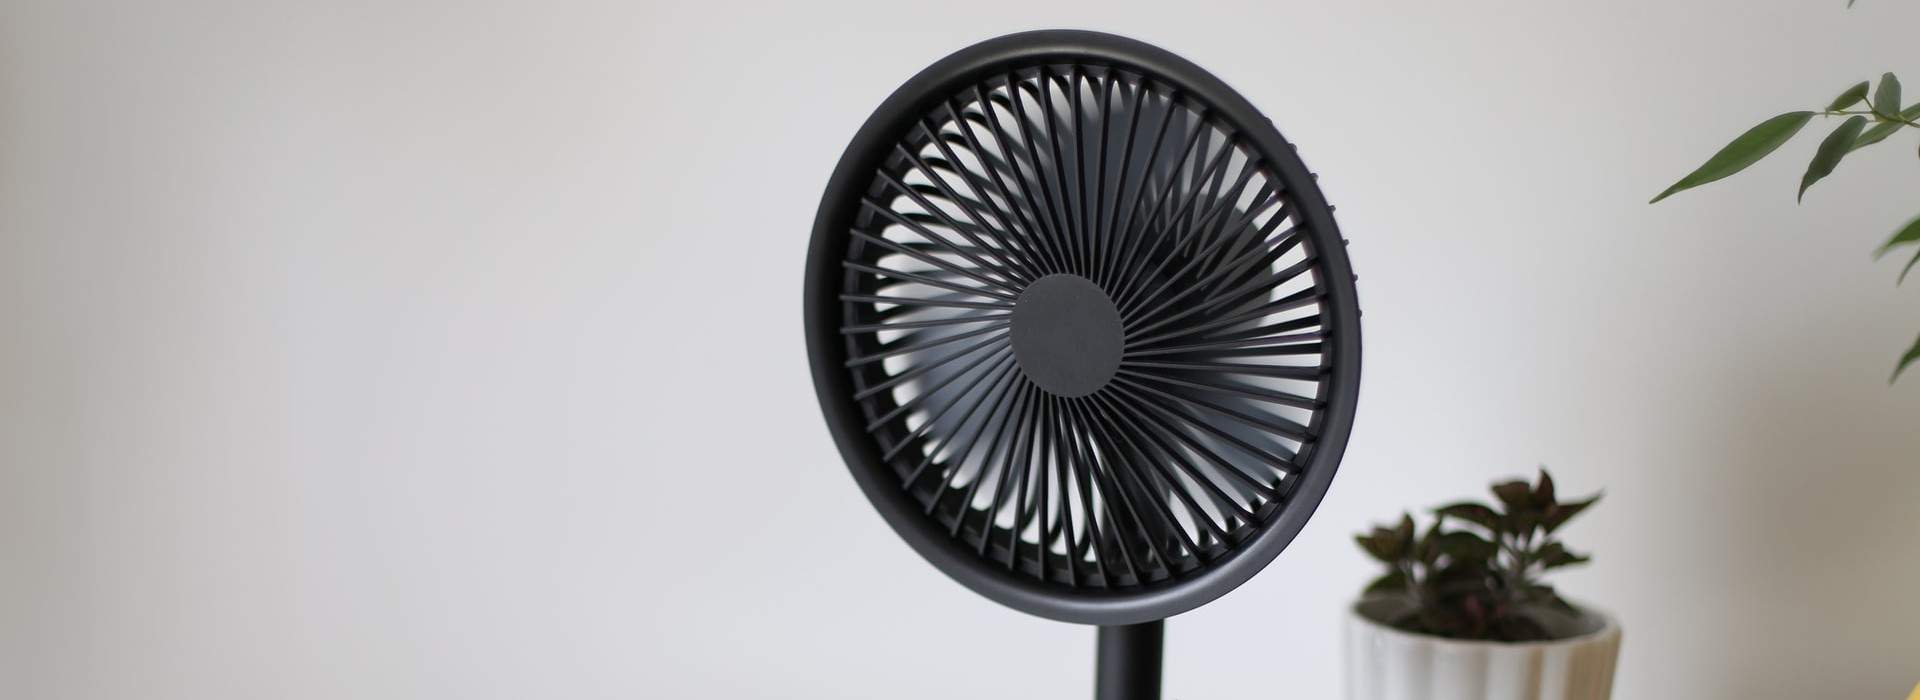 Los mejores ventiladores de pie para combatir el calor este verano